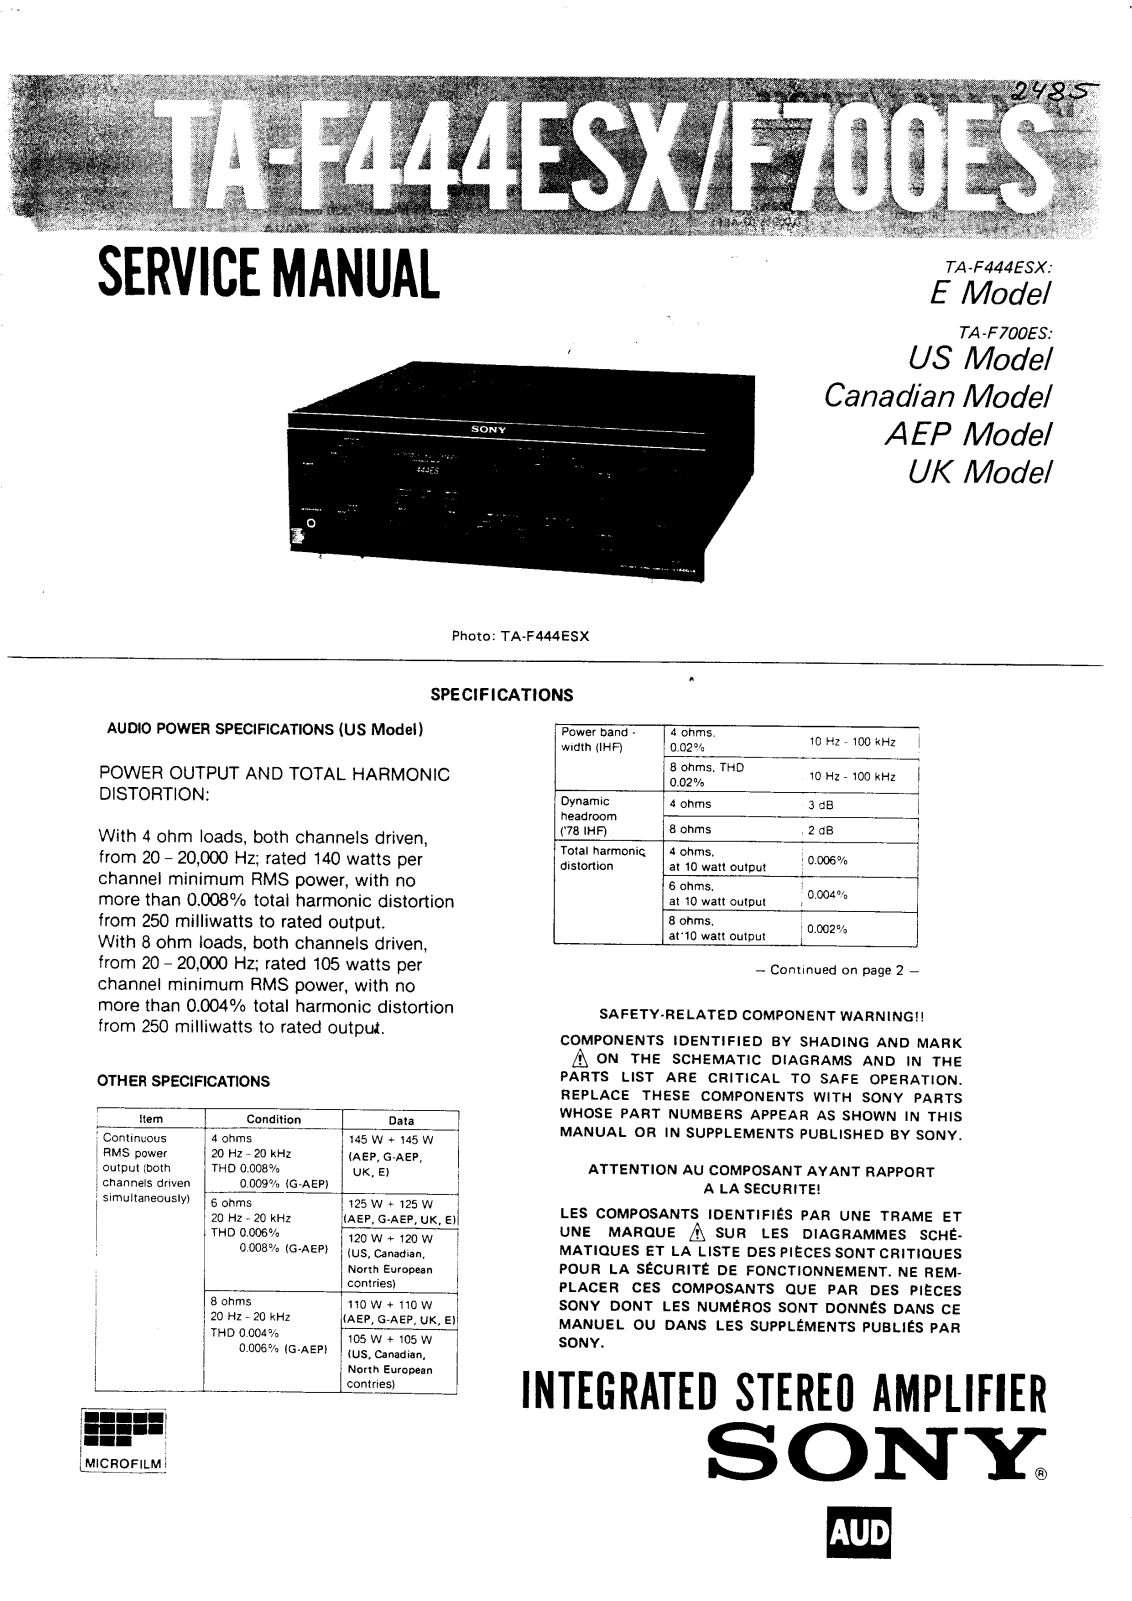 Sony TAF-444-ESX, TAF-700-ES Service manual